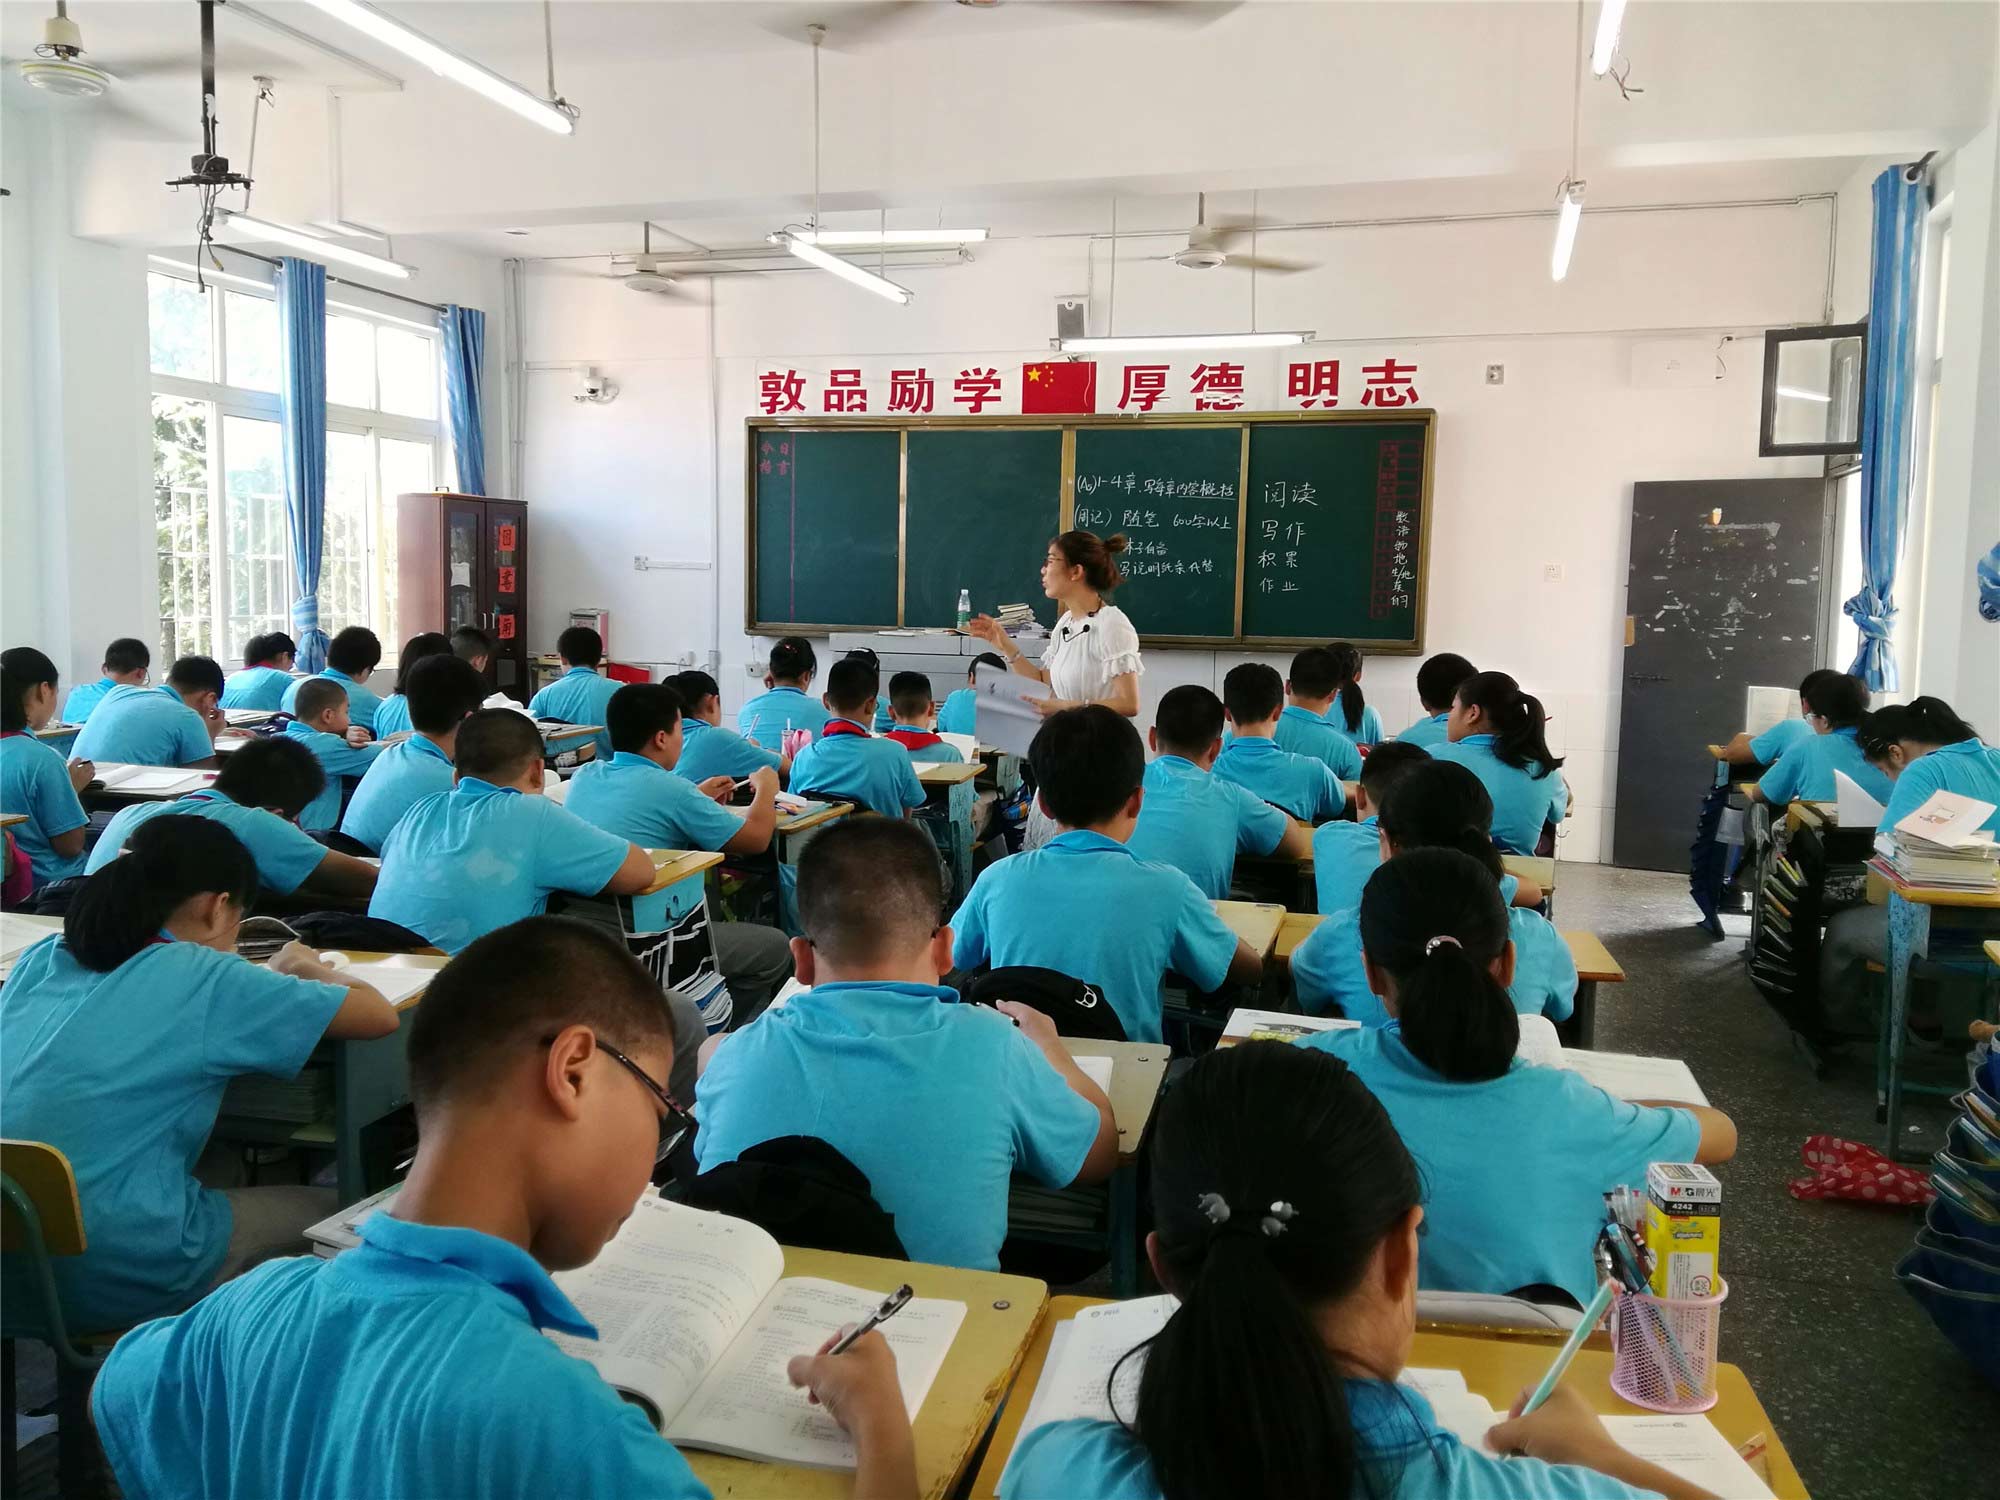 凝聚班级正能量——刘宇老师班级管理经验分享